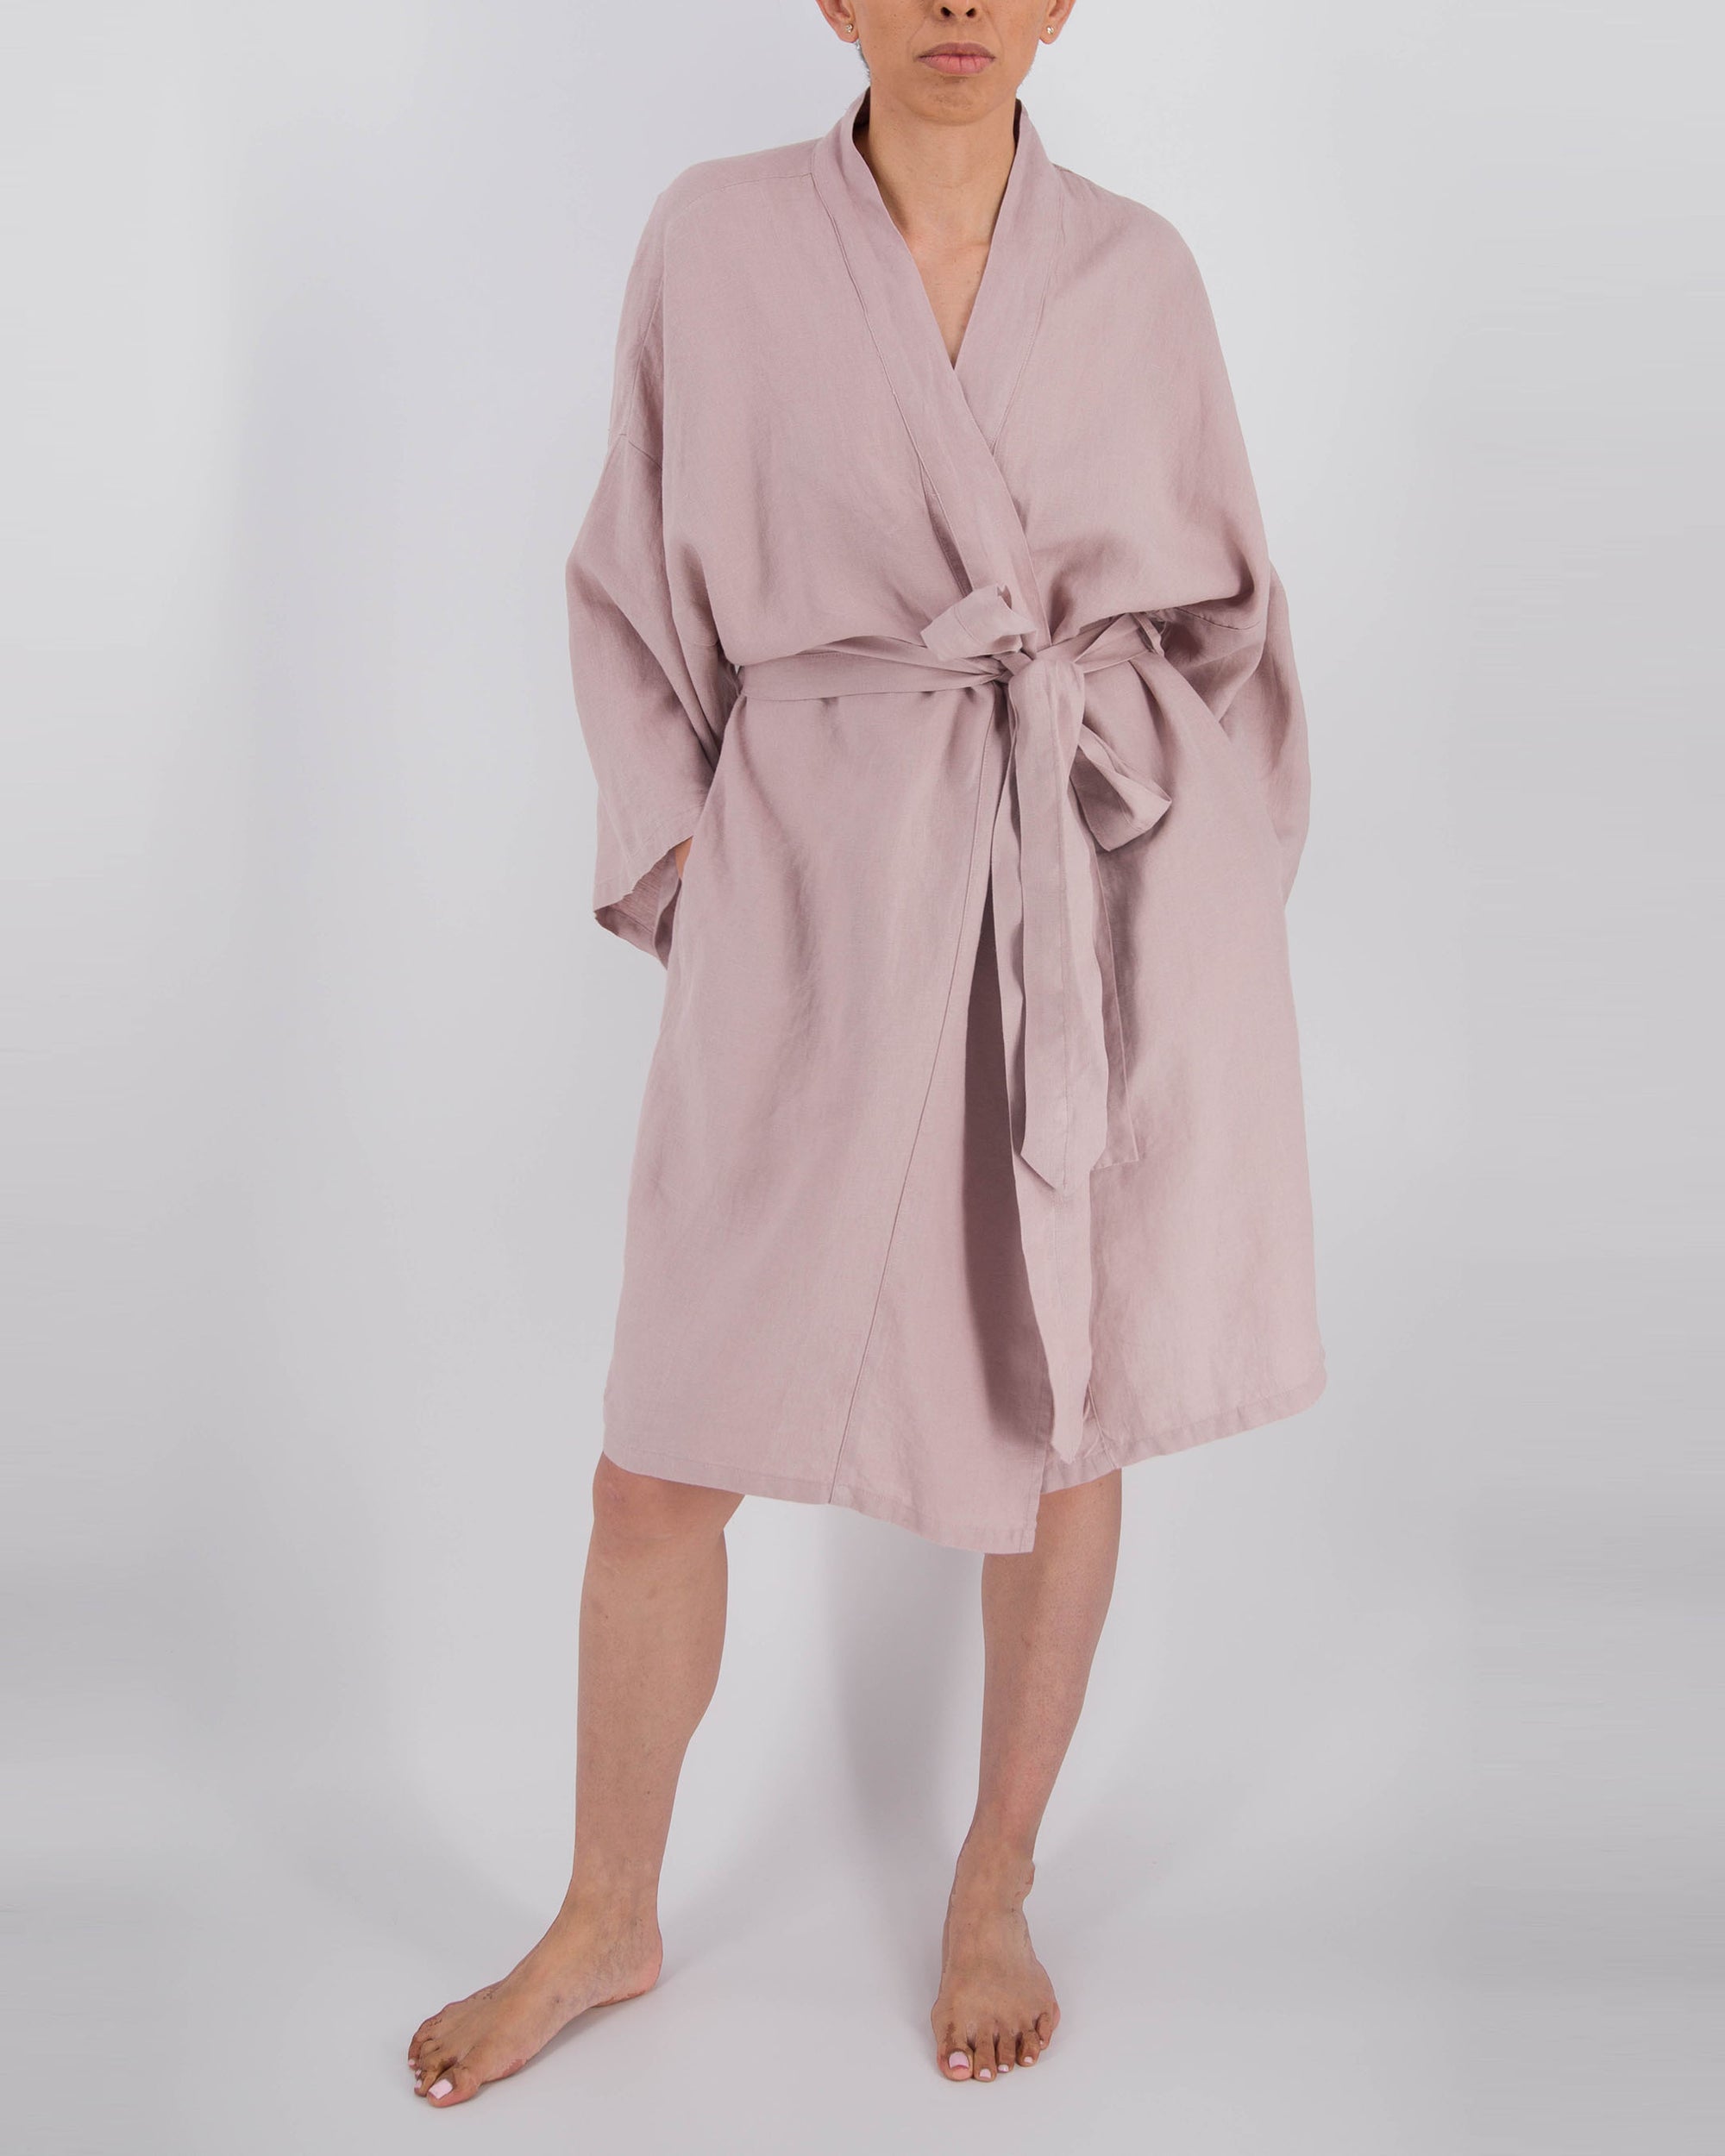 bisque pink knee-length linen robe